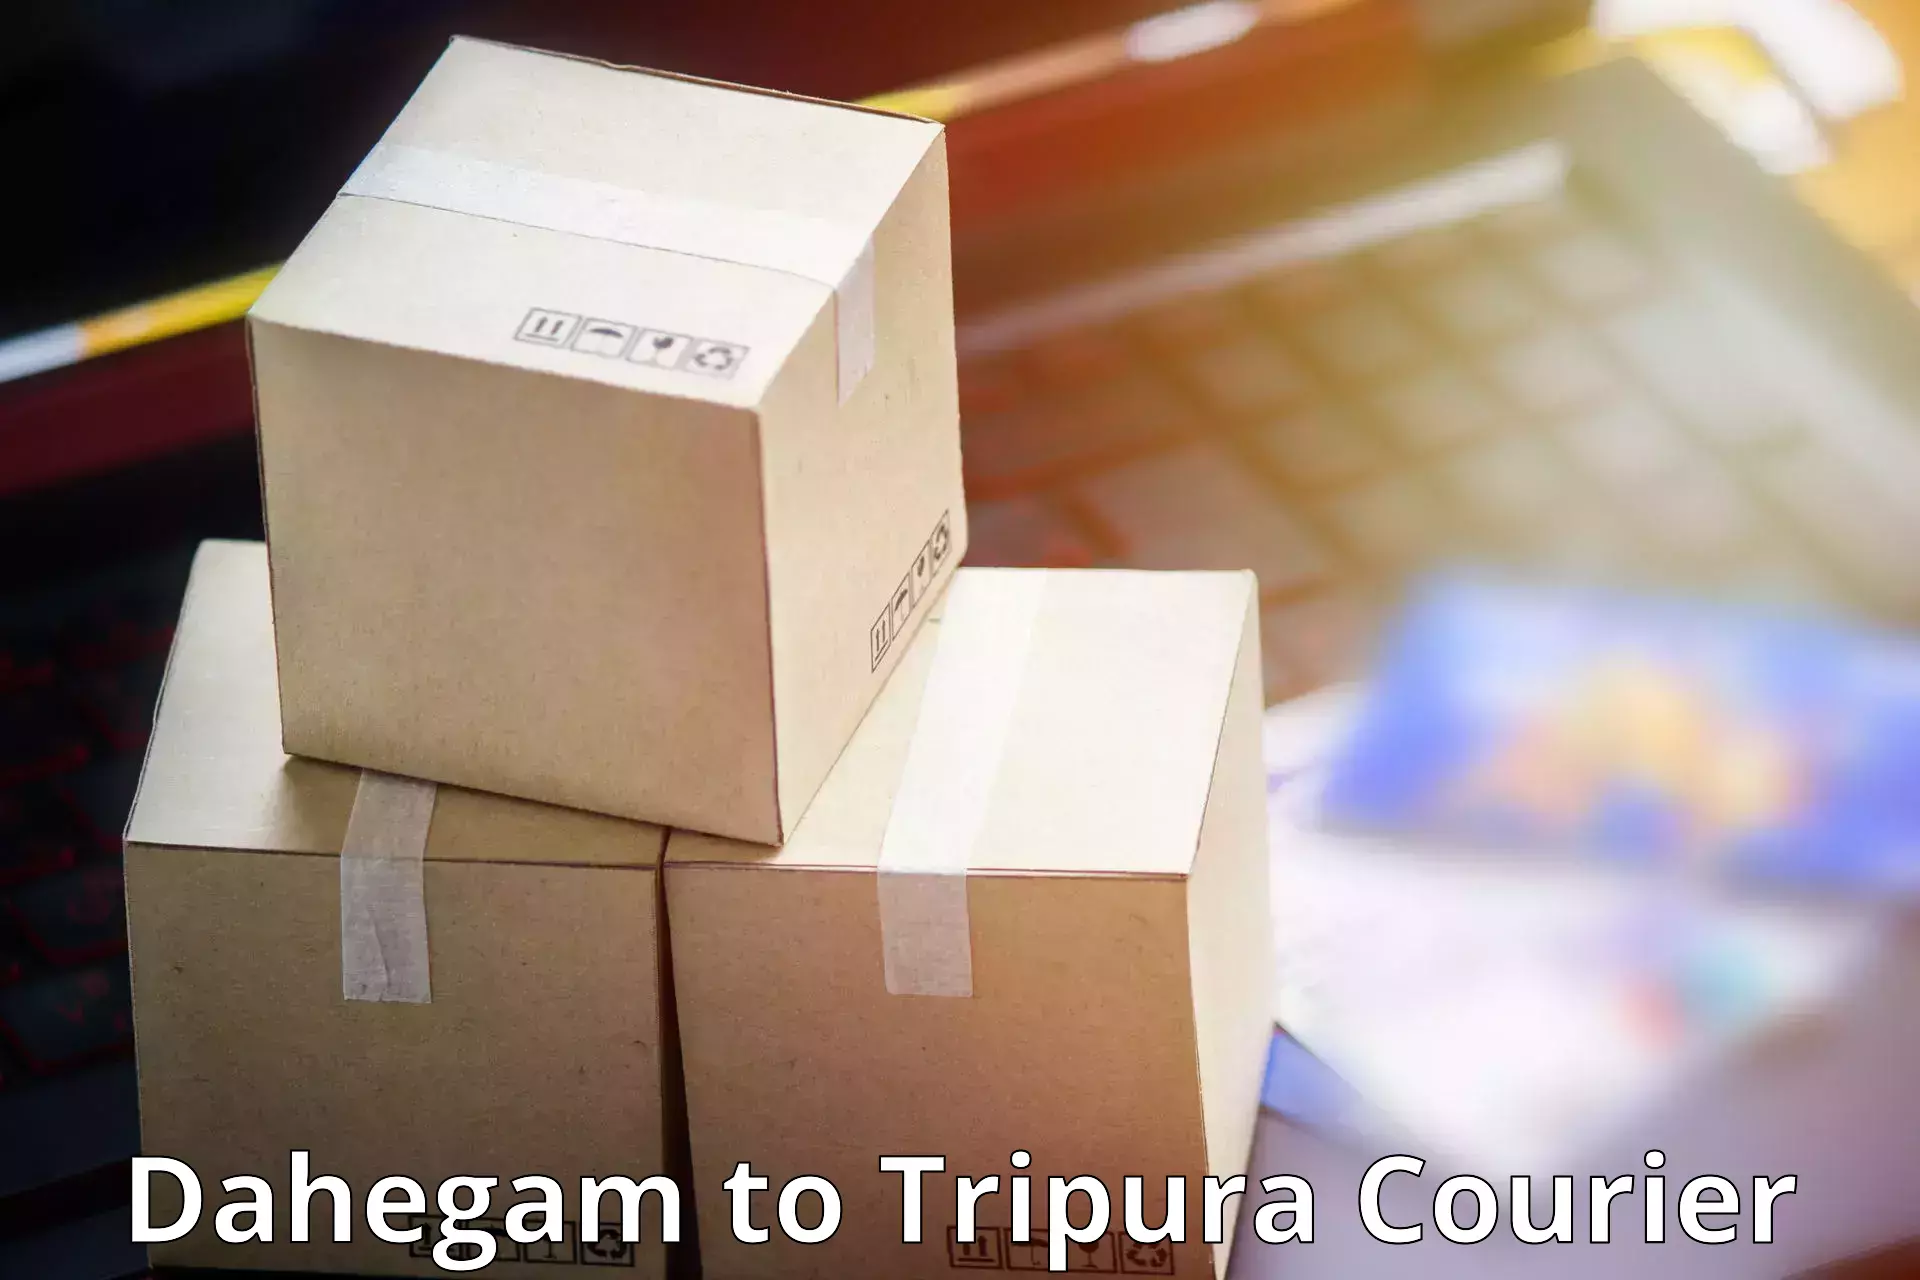 Quality courier partnerships Dahegam to Tripura